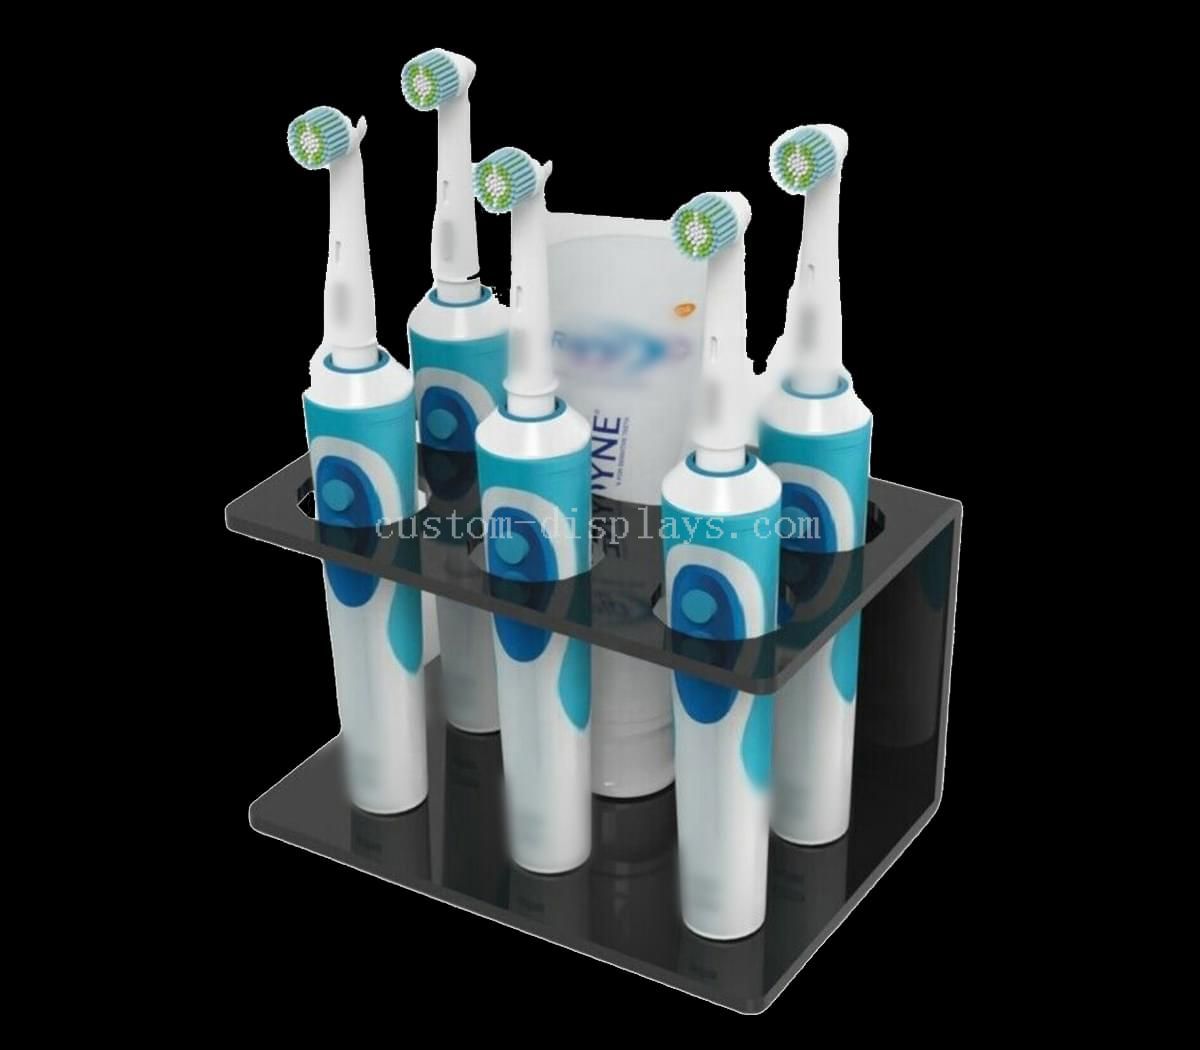 Estantes de acrílico personalizados para soporte de exhibición de cepillos de dientes